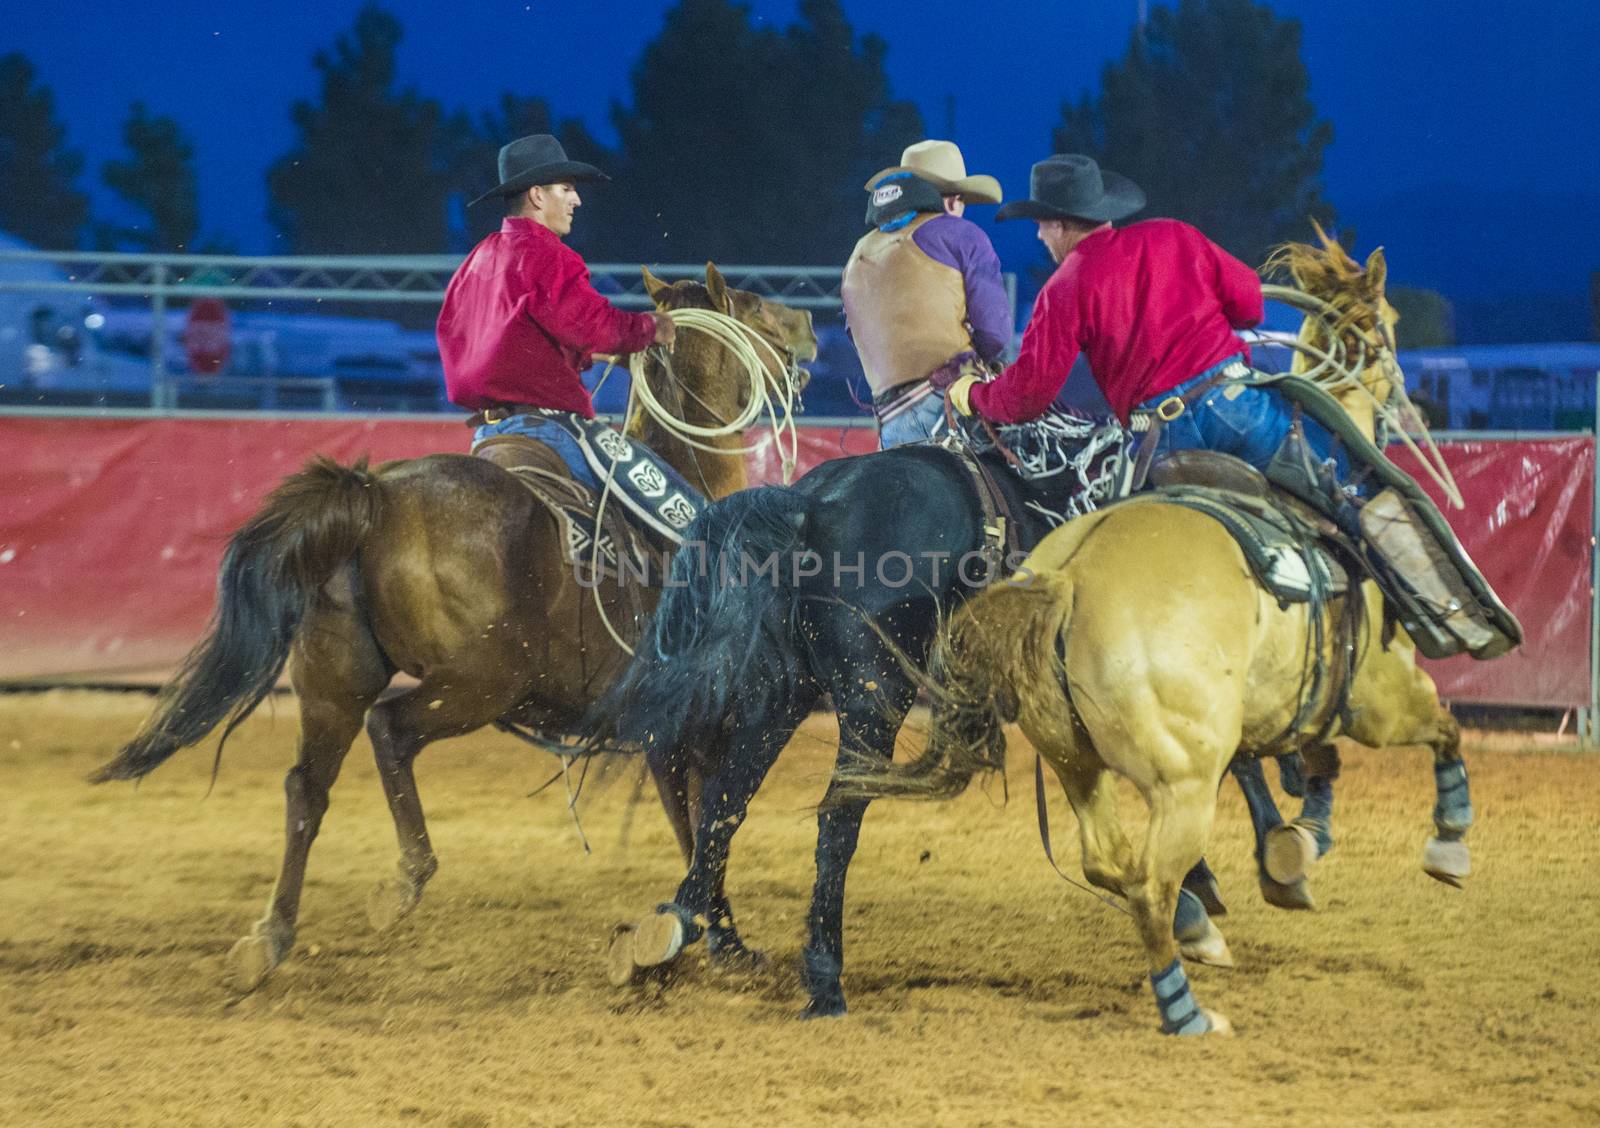 The Clark County Fair and Rodeo by kobby_dagan